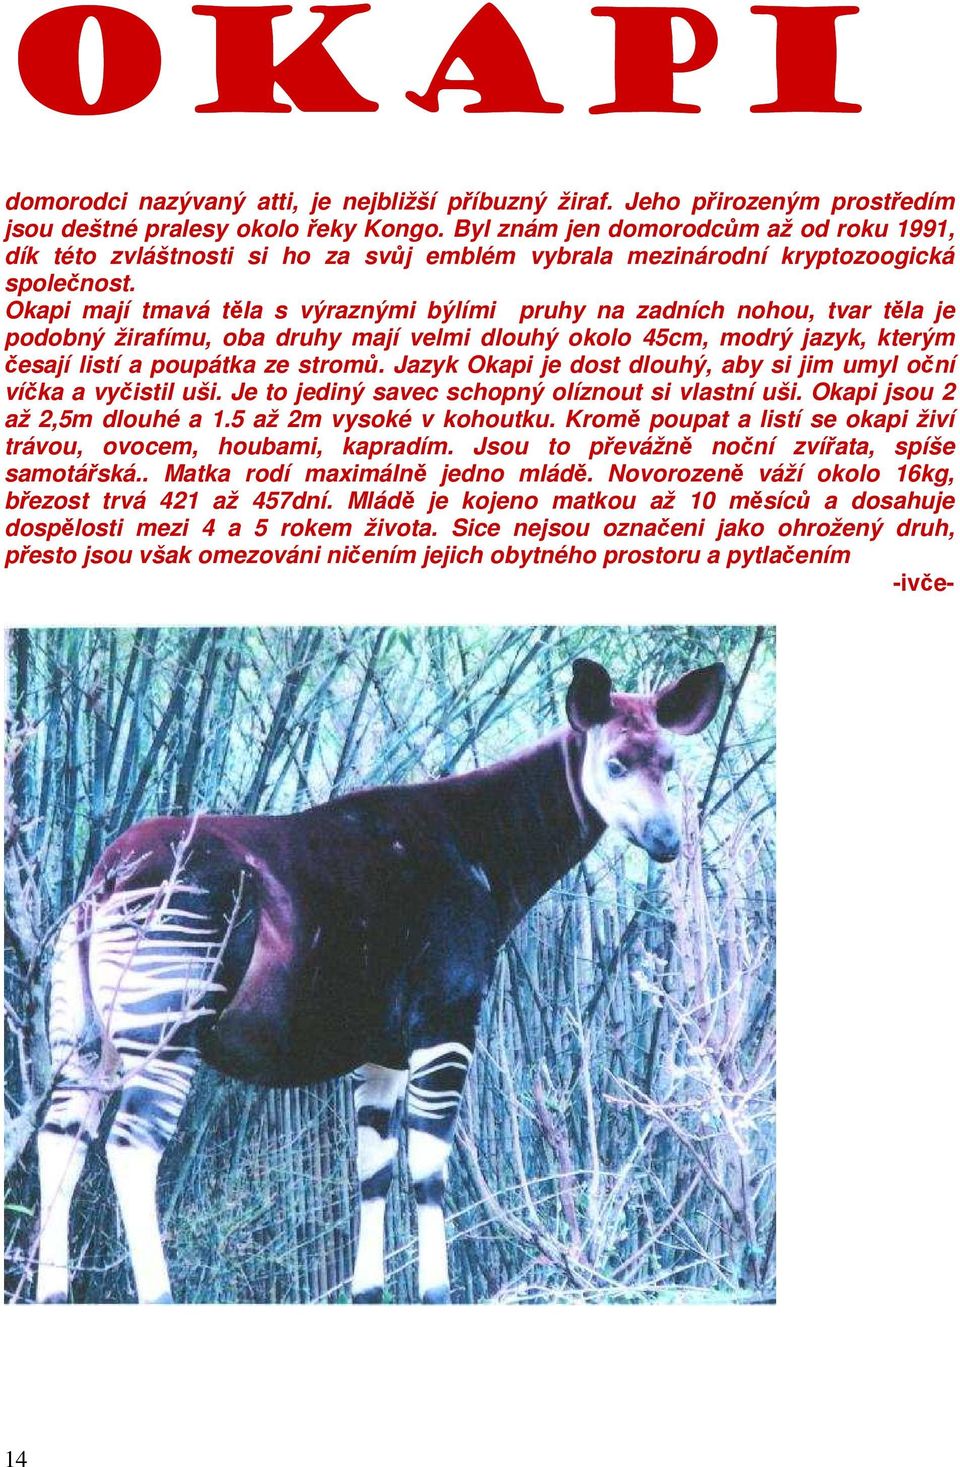 Okapi mají tmavá těla s výraznými býlími pruhy na zadních nohou, tvar těla je podobný žirafímu, oba druhy mají velmi dlouhý okolo 45cm, modrý jazyk, kterým česají listí a poupátka ze stromů.